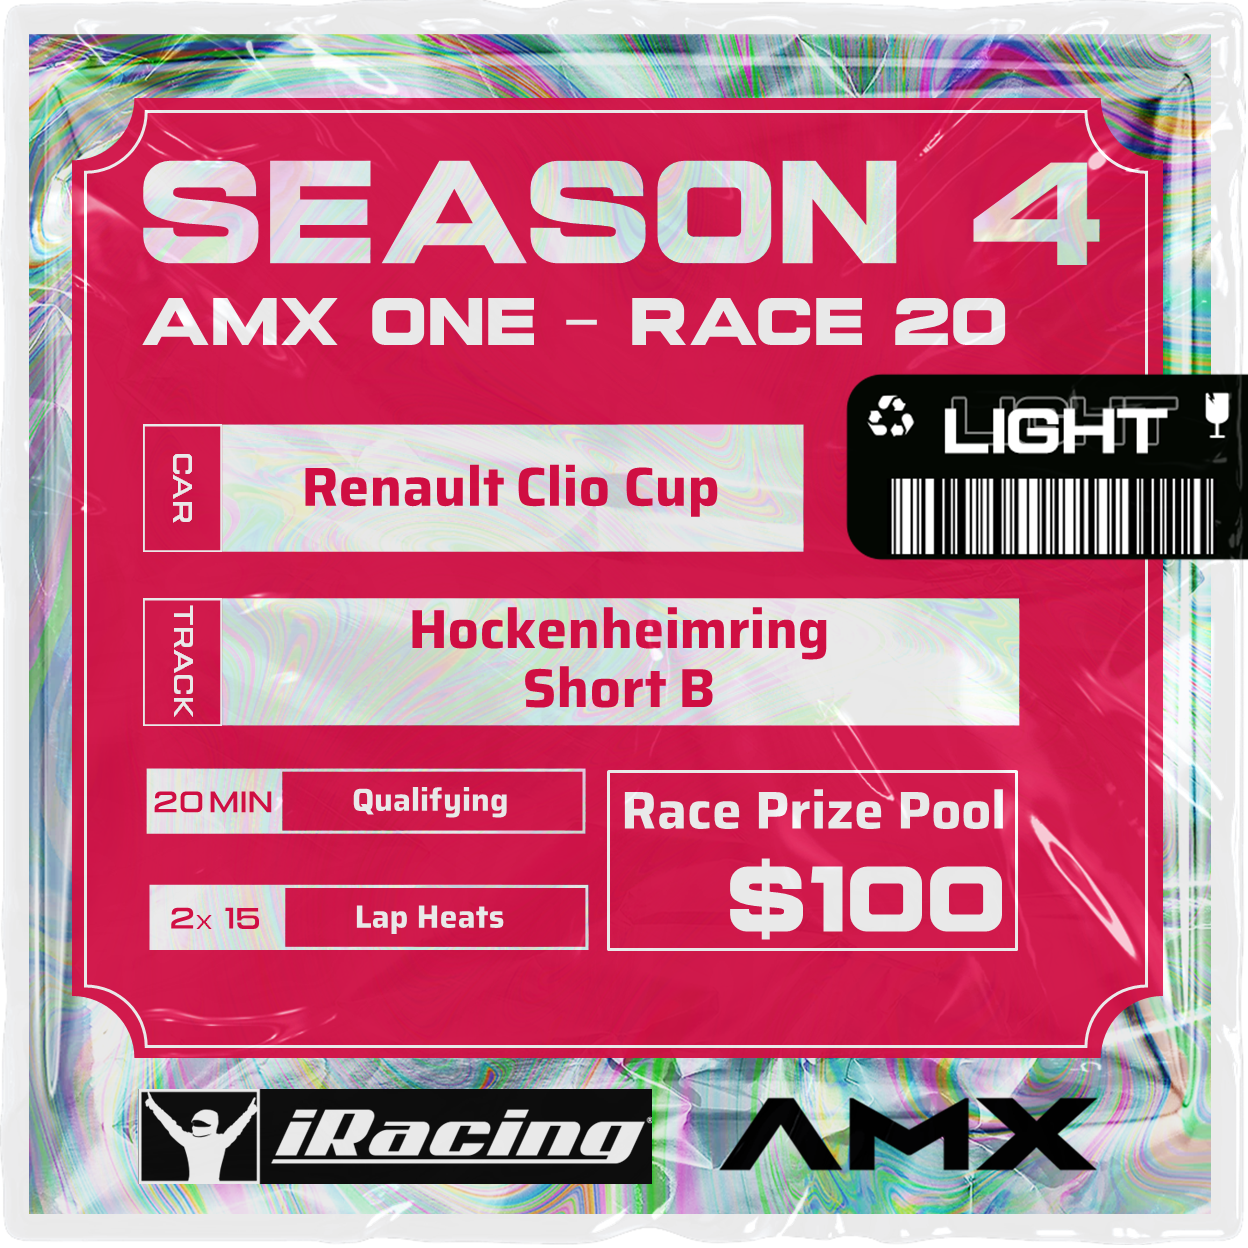 AMX ONE - RACE 20 [3/19 - 5:50 PM GMT]